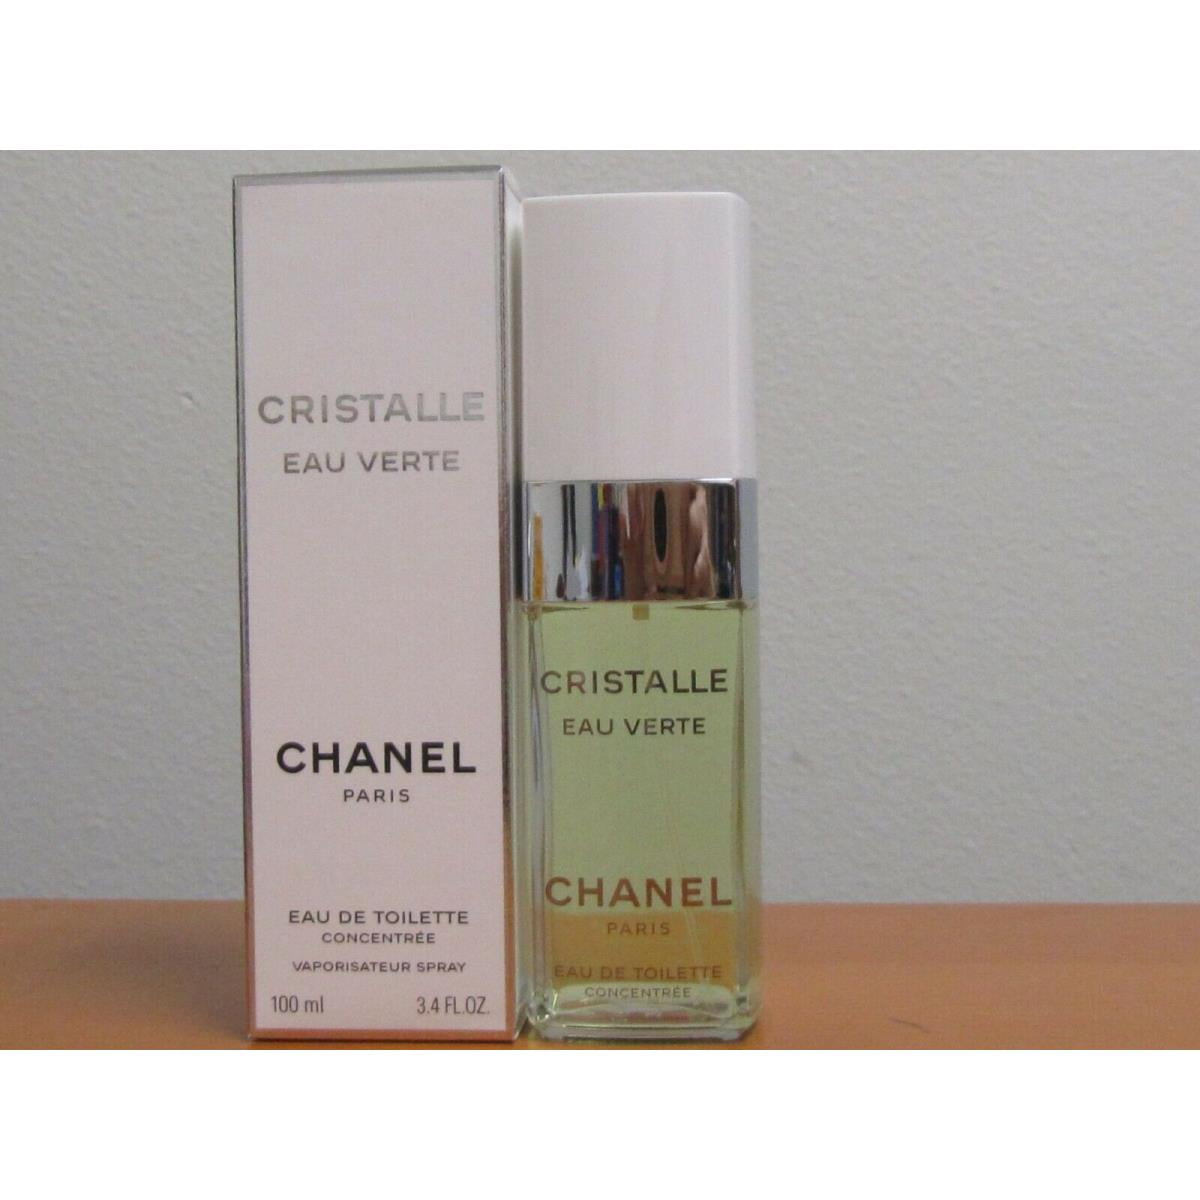 Chanel Cristalle Eau Verte EDT Spray Refreshing Fragrance for